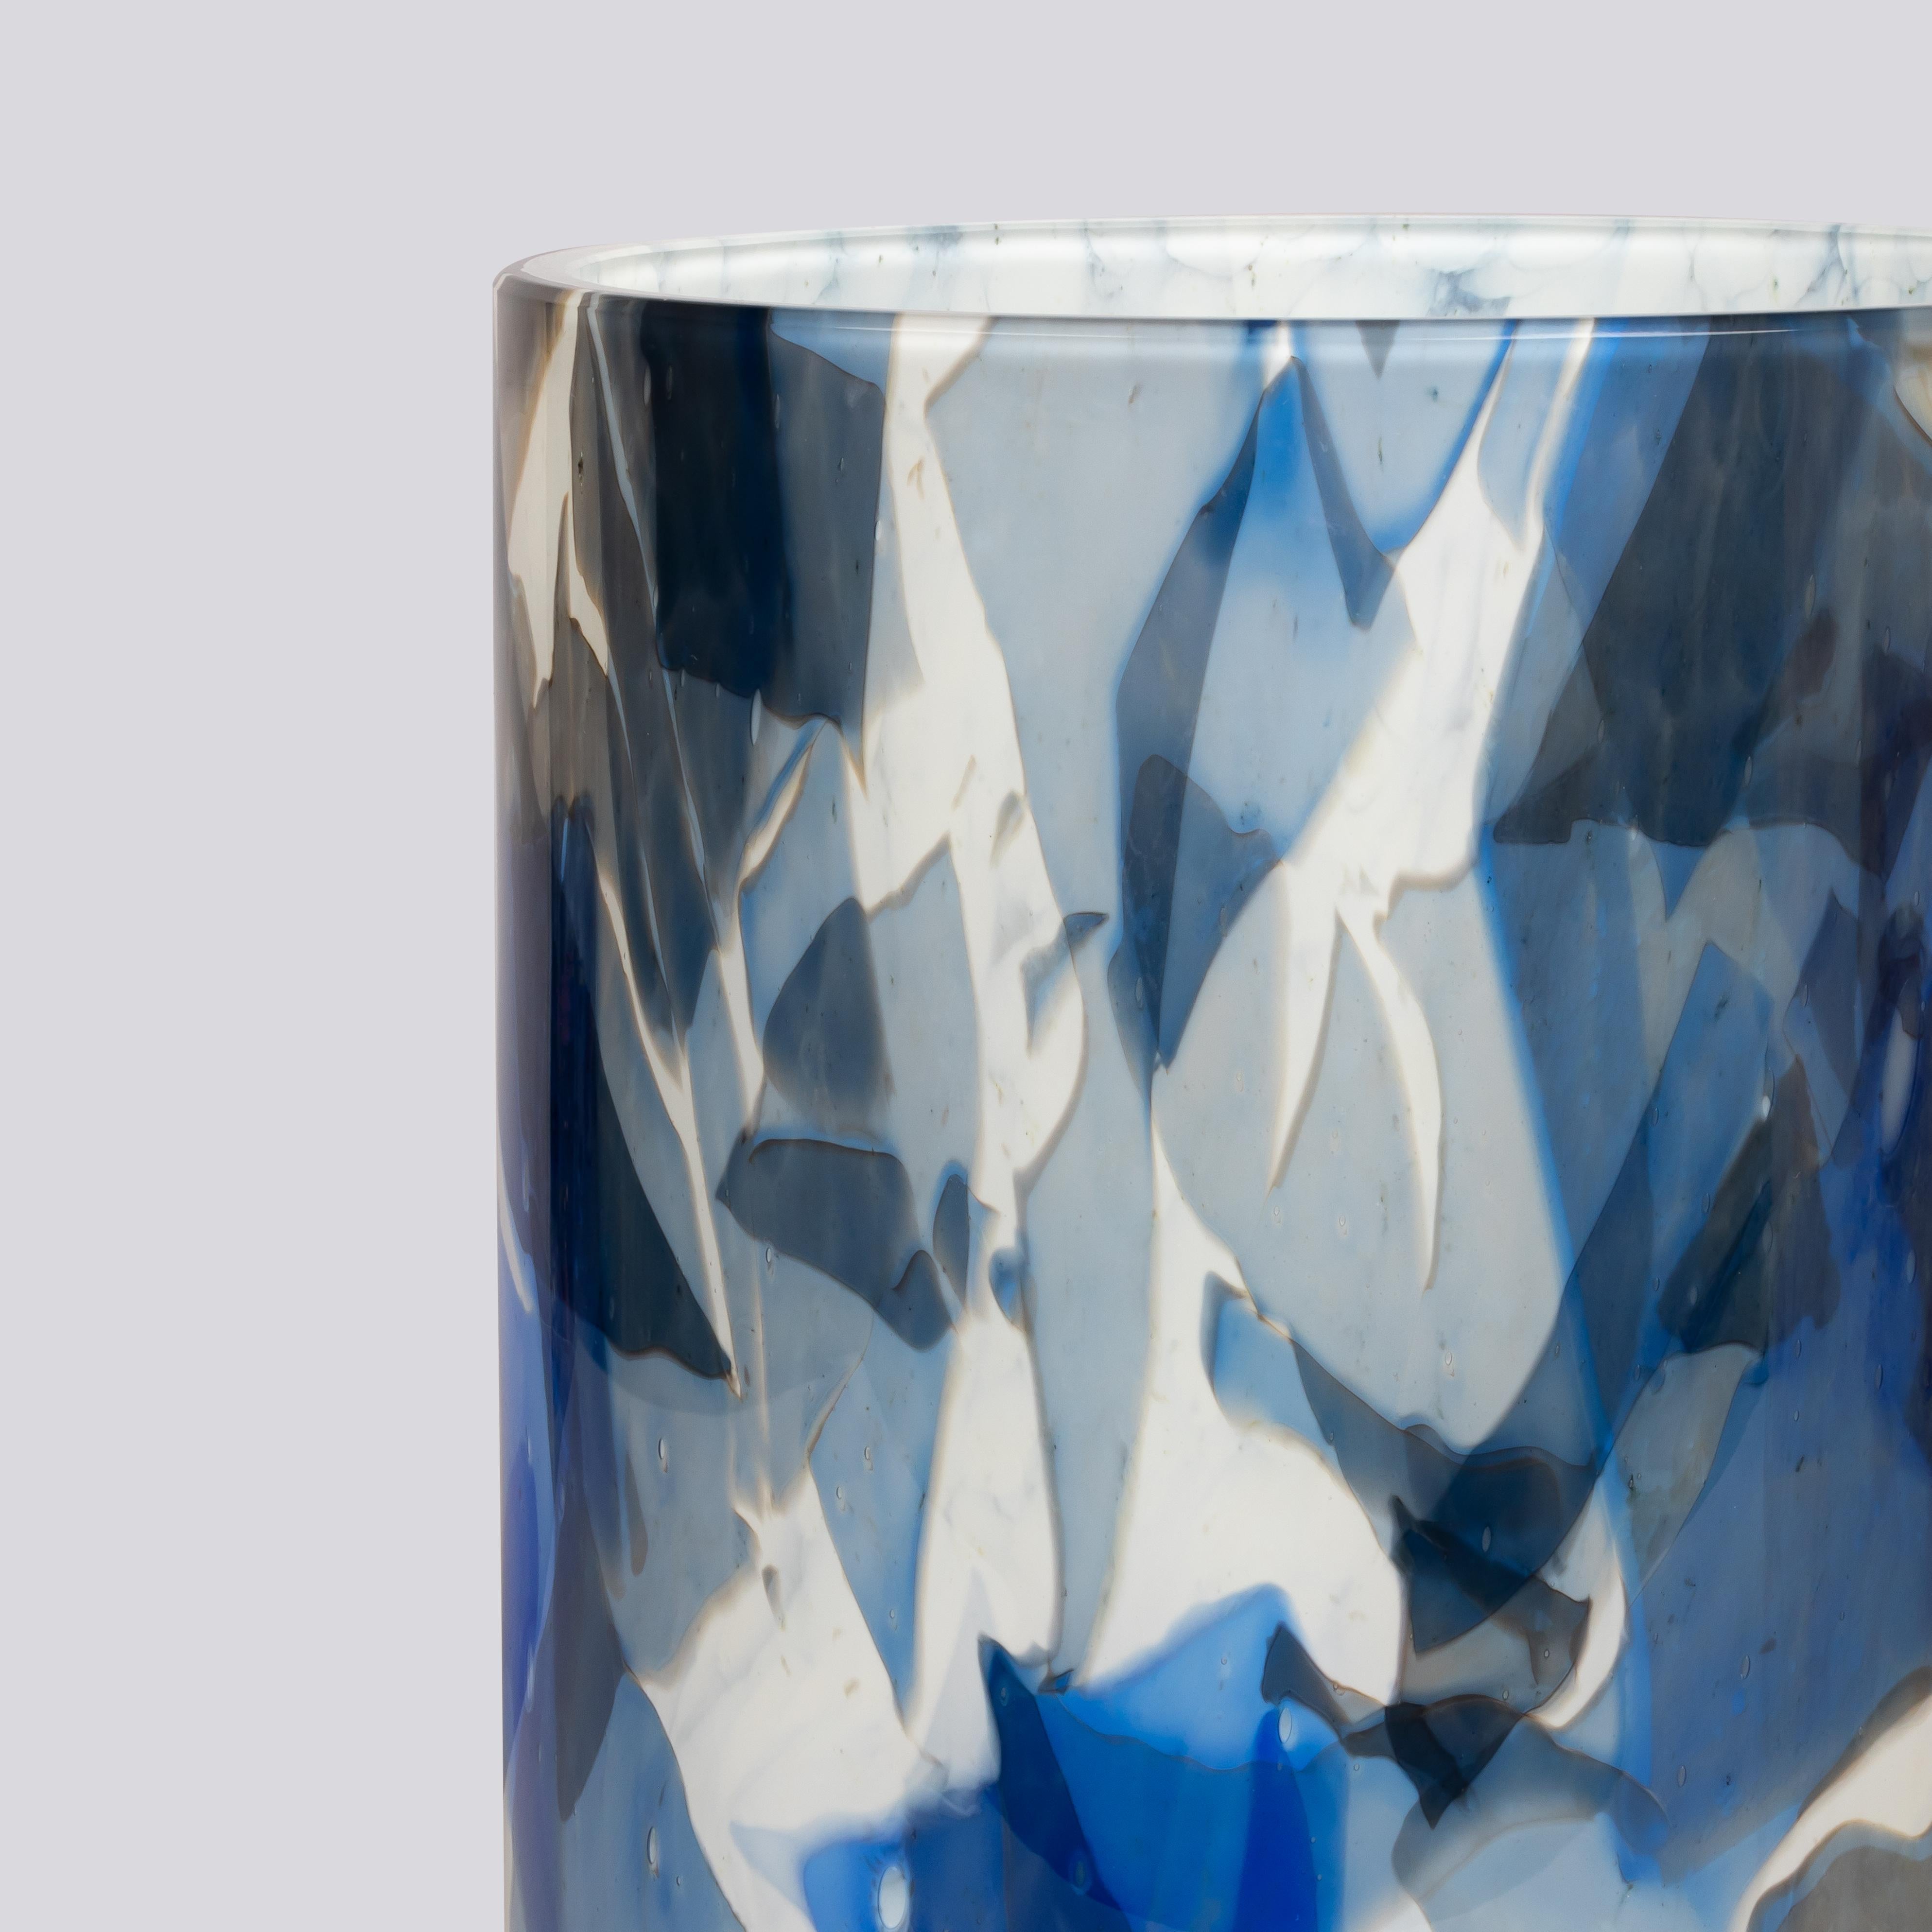 Le grand vase de Stories of Italy en verre soufflé de Murano est fabriqué de manière experte à Venise selon notre technique distinctive du nougat. Ce vase exceptionnel présente une fusion captivante de teintes changeantes créées par la fusion